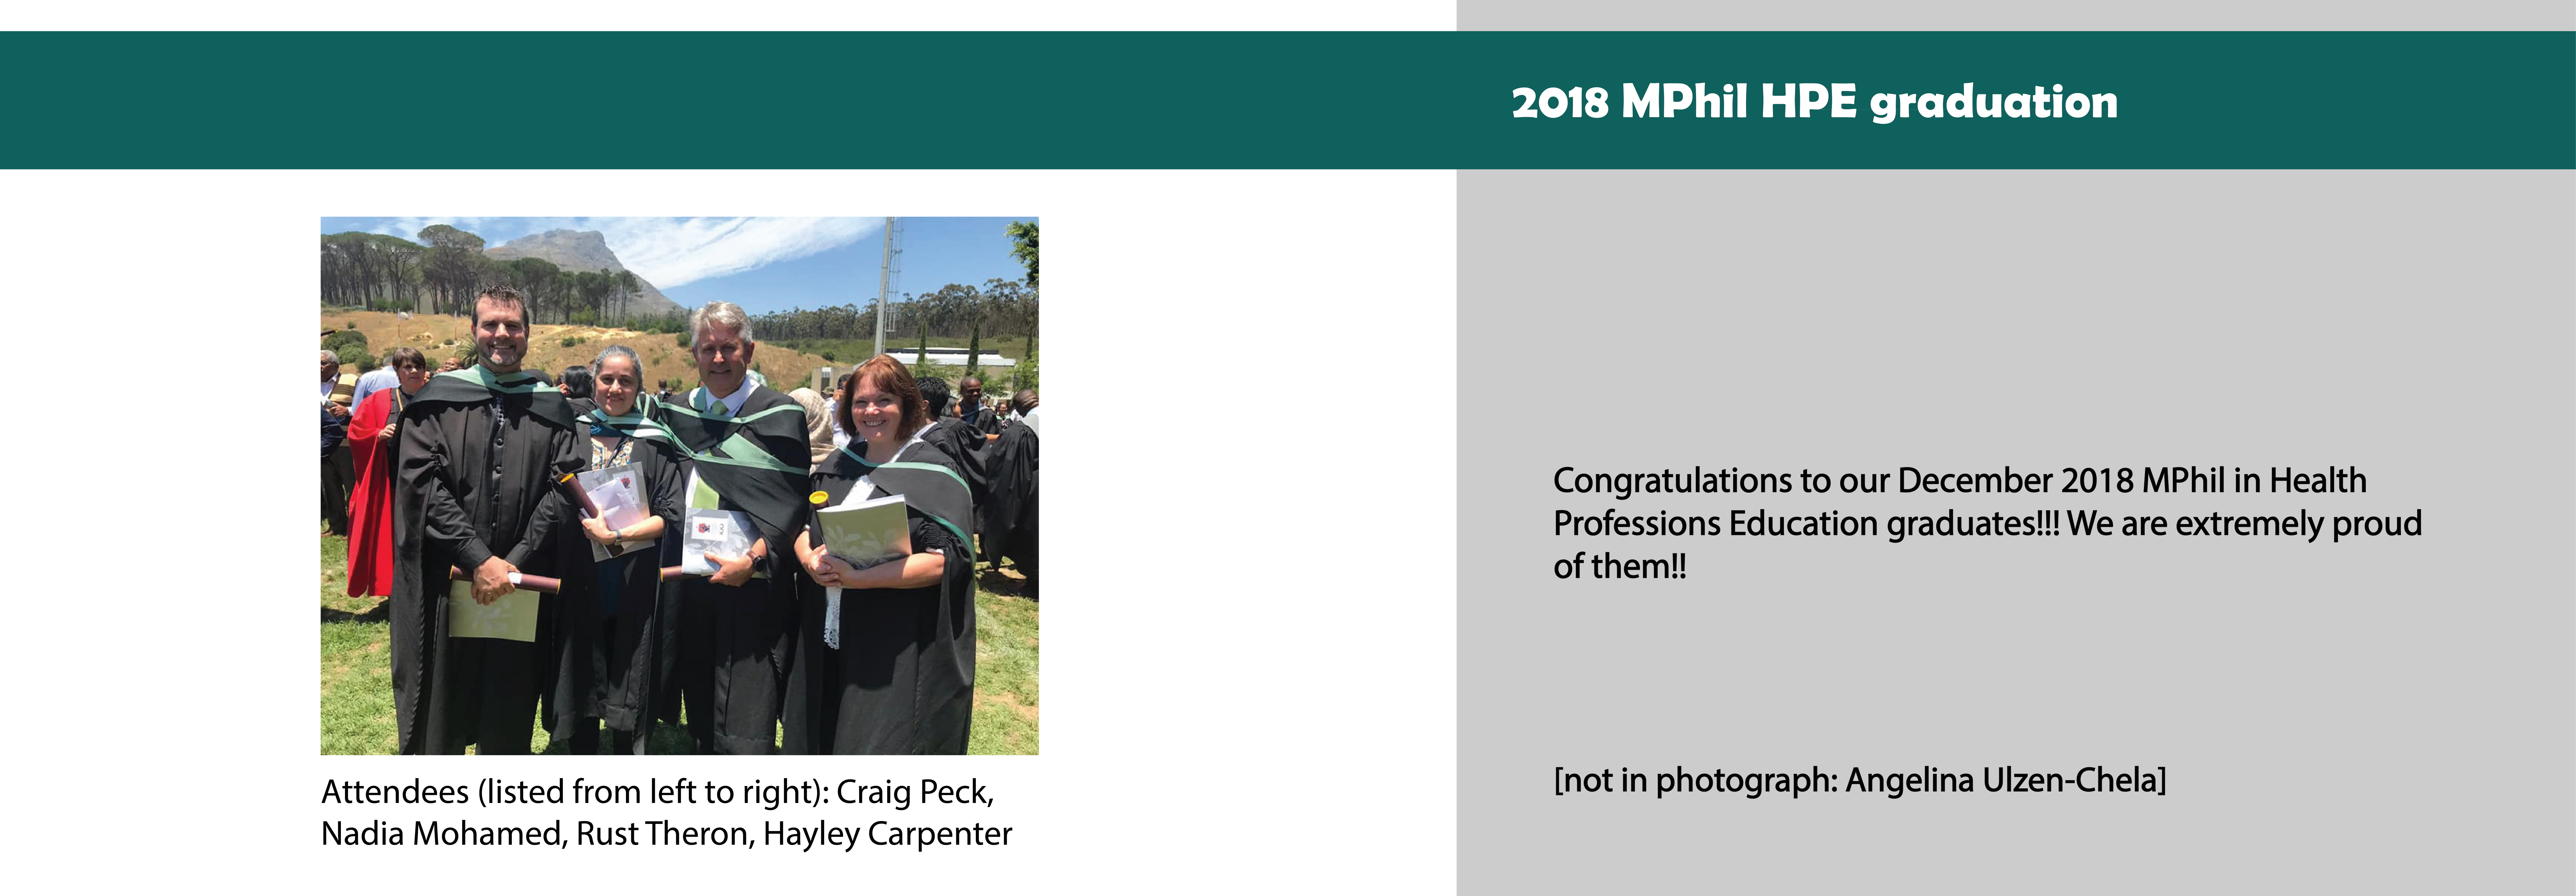 2019 MPhil graduation2.jpg